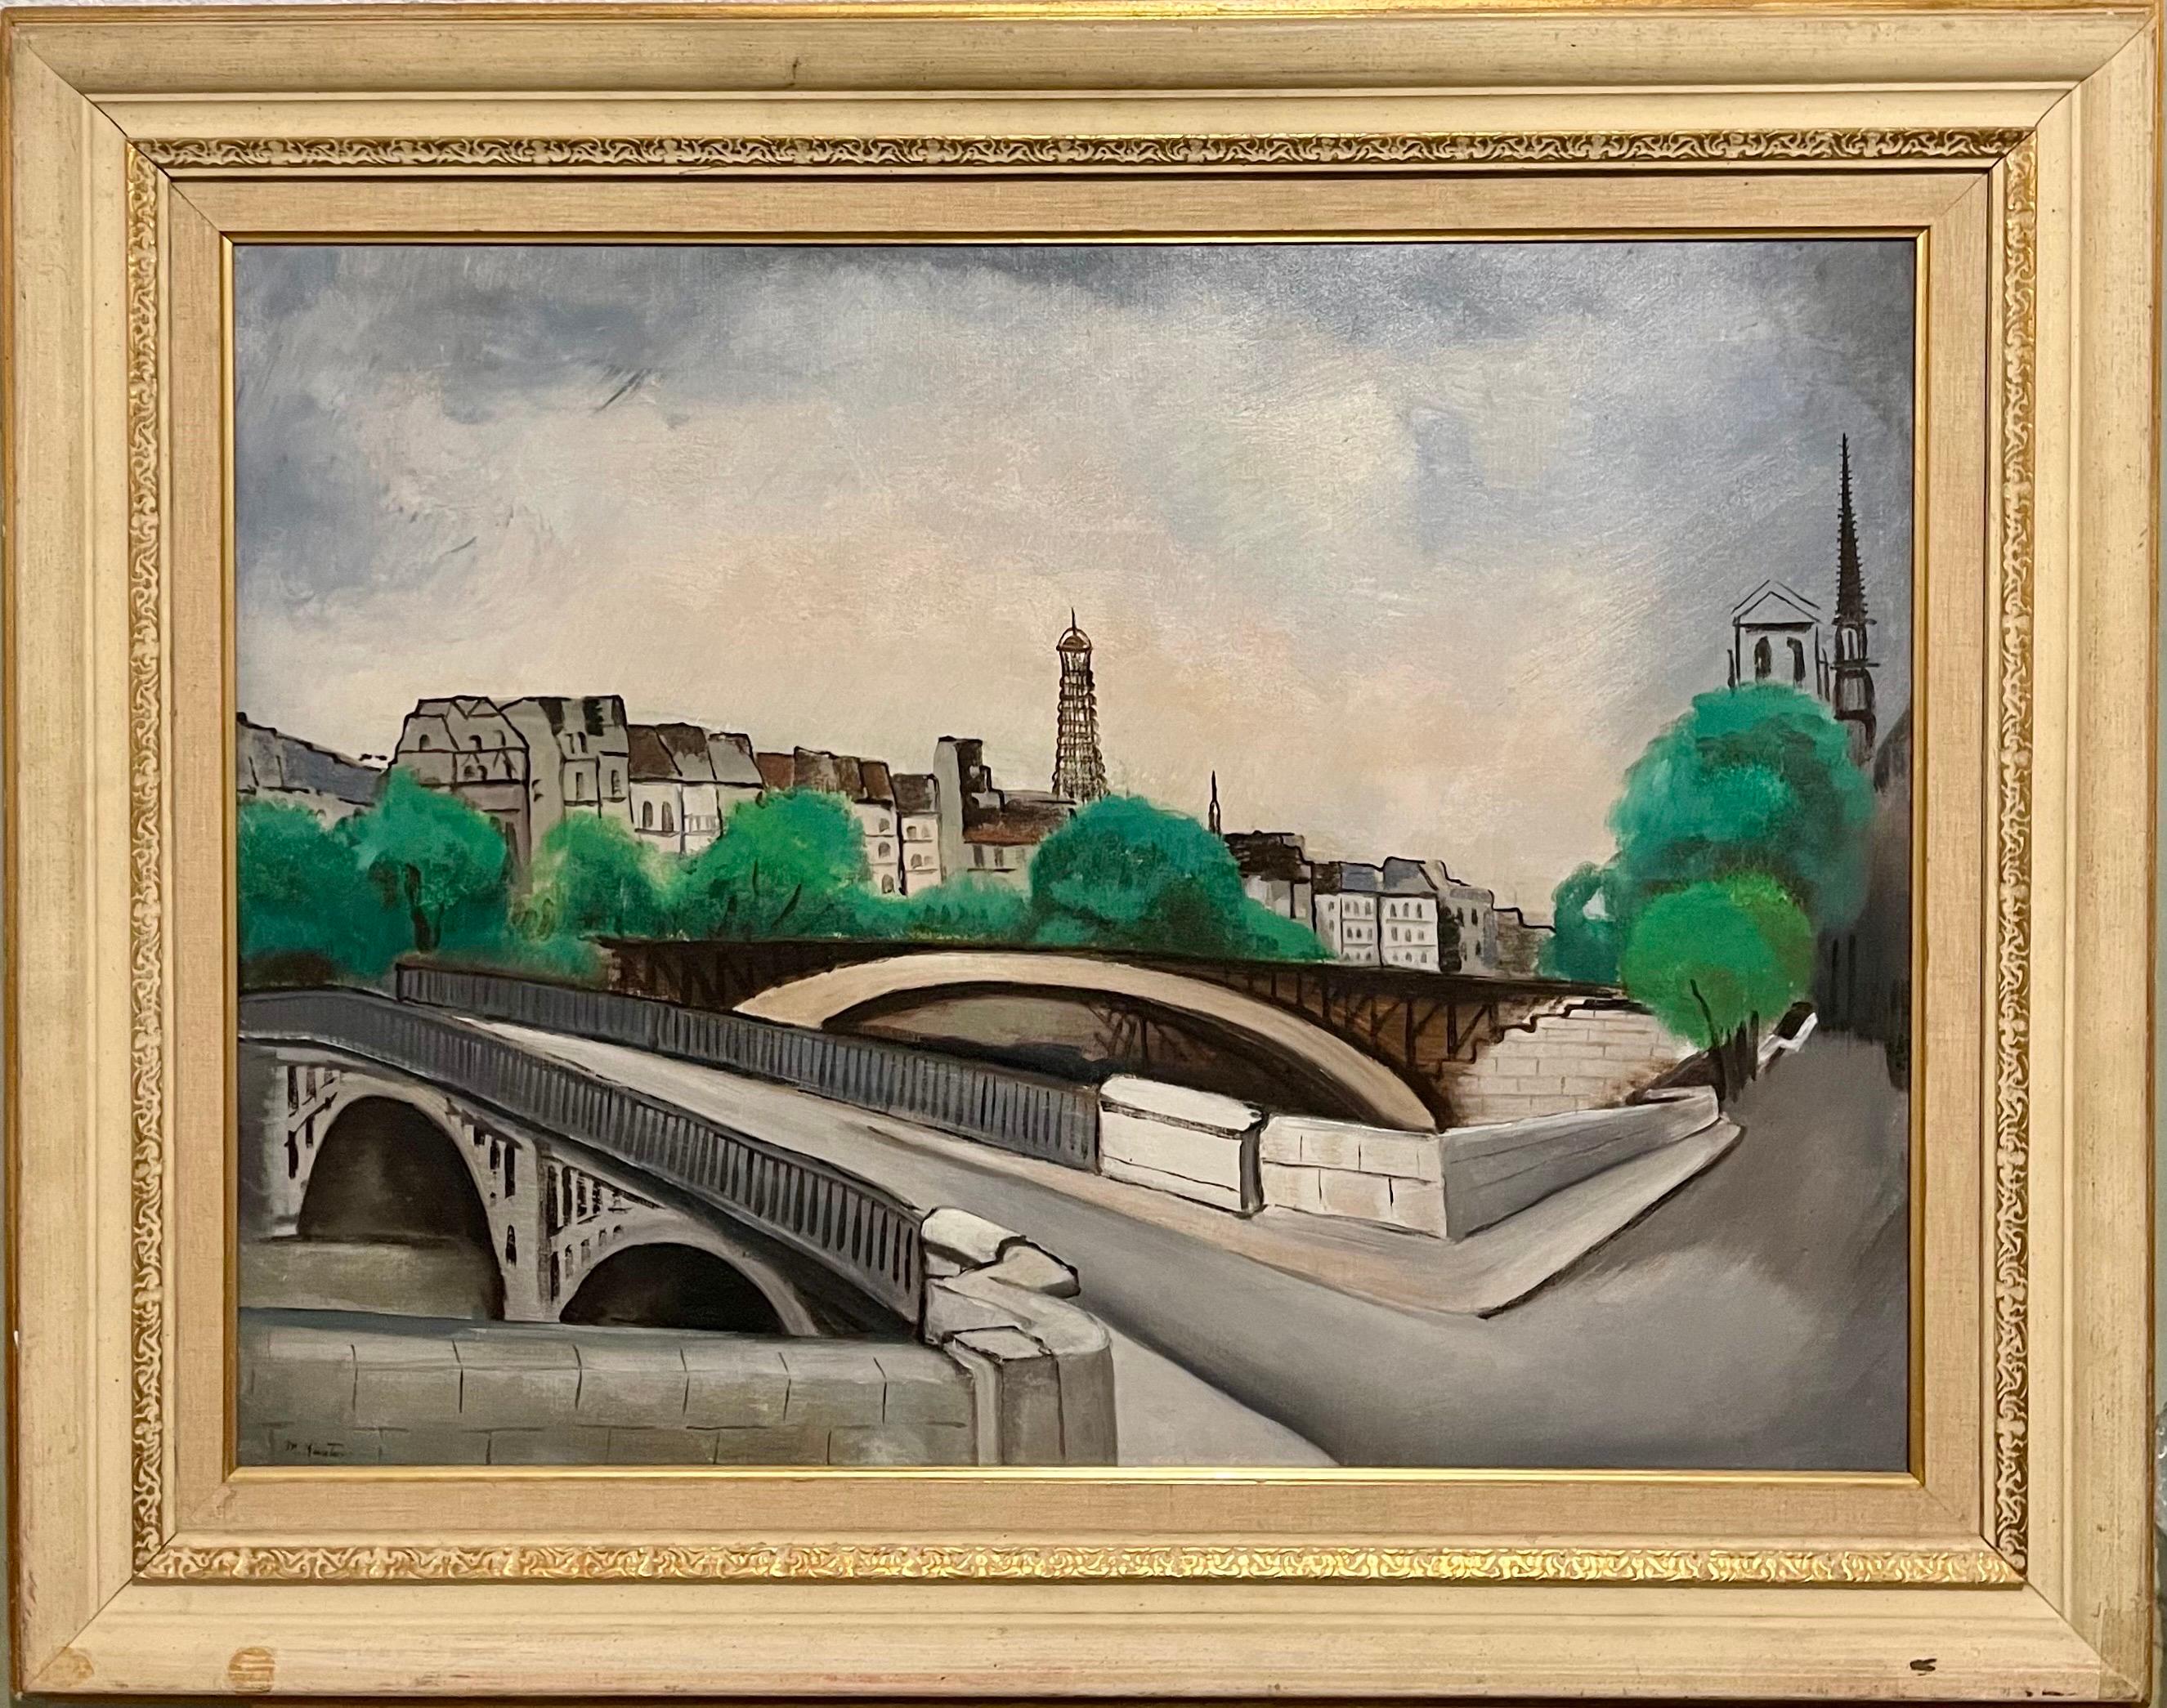 Peinture à l'huile de 1927 - Tour Eiffel - Paris - L'artiste moderniste américain Wpa Morris Kantor